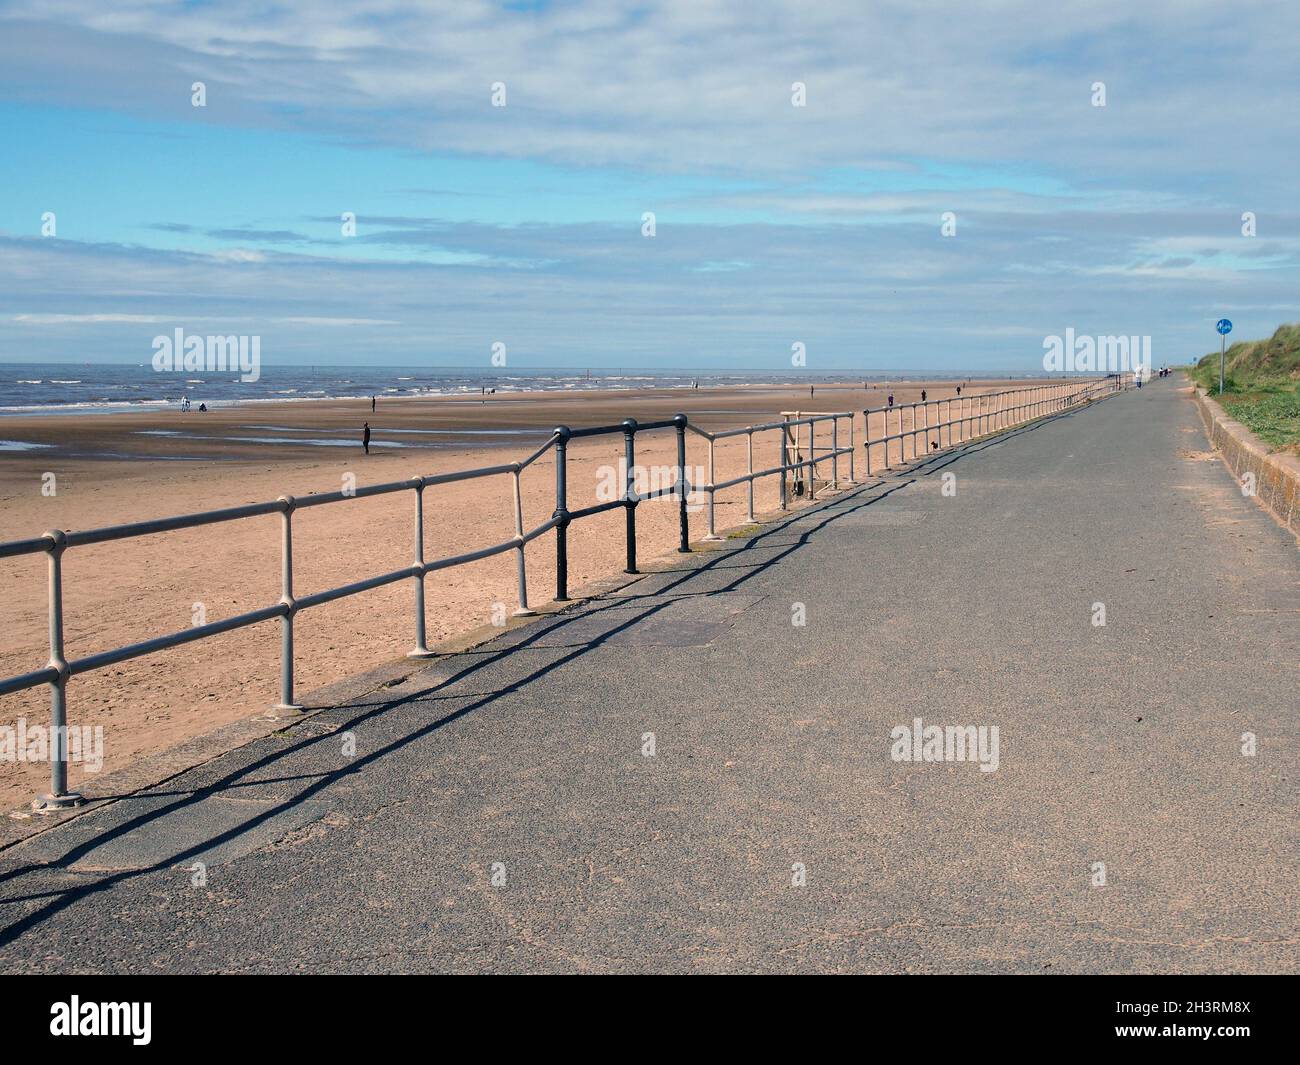 La passerella pedonale accanto al mare in crosby merseyside con figure distanti sulla spiaggia alla luce del sole estivo Foto Stock